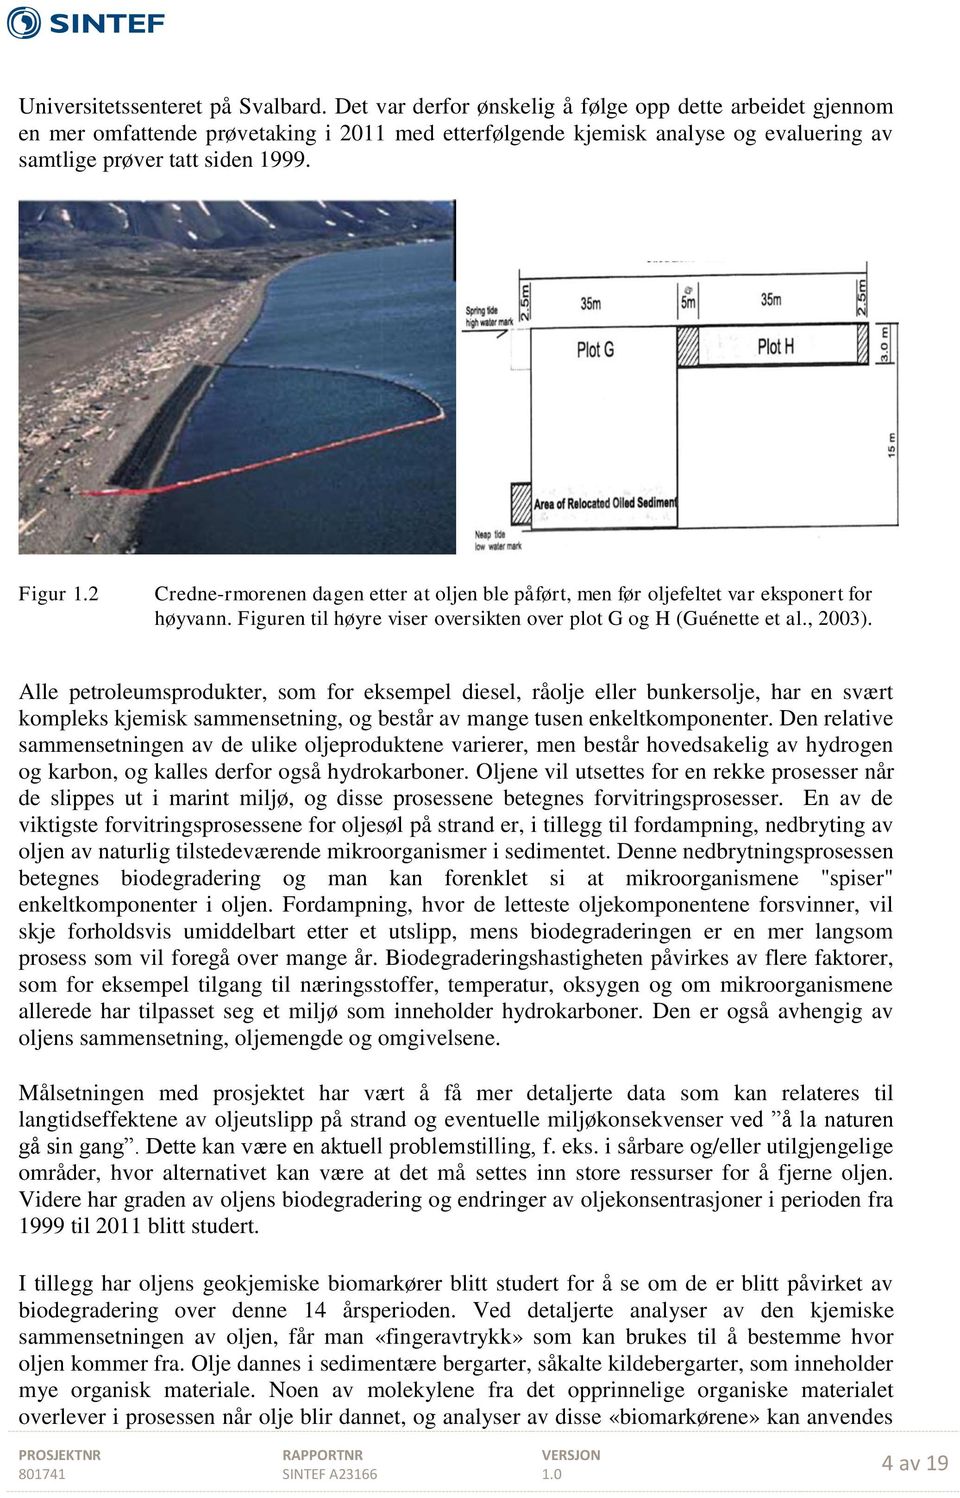 2 Credne-rmorenen dagen etter at oljen ble påført, men før oljefeltet var eksponert for høyvann. Figuren til høyre viser oversikten over plot G og H (Guénette et al., 2003).